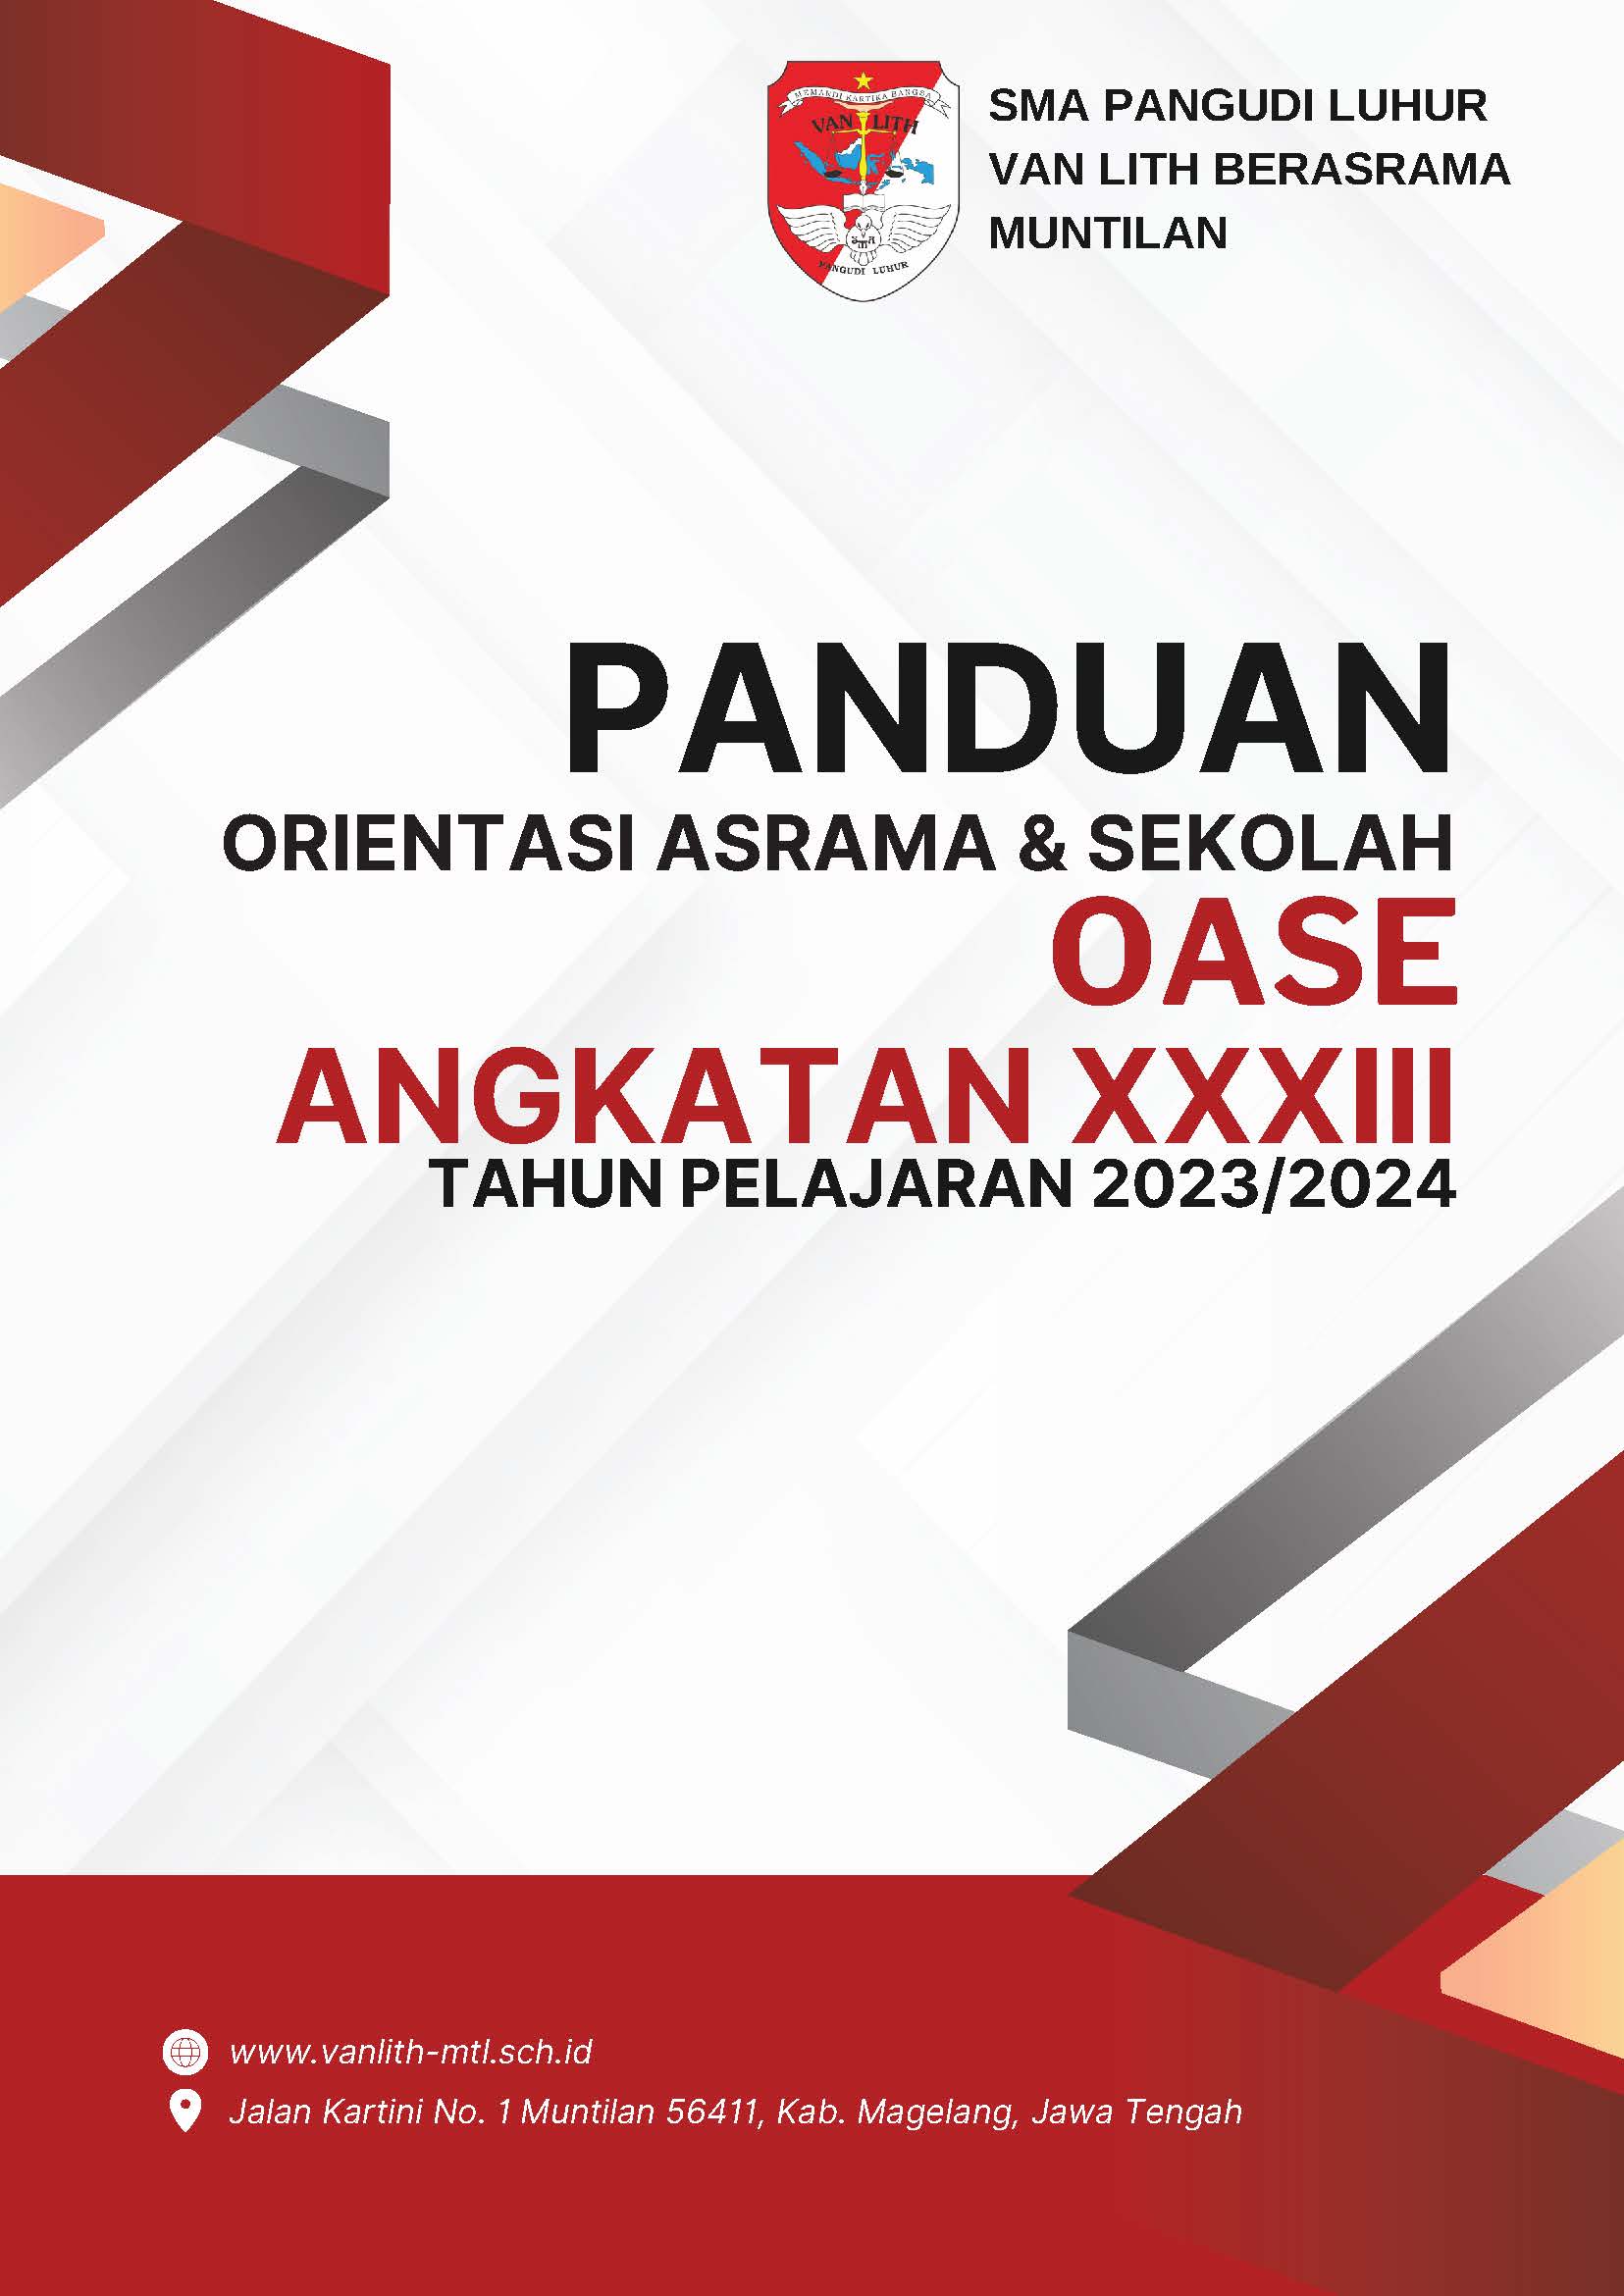 Buku Panduan Orientasi Asrama & Sekolah (OASE) Angkatan XXXIII Tahun Pelajaran 2023/2024